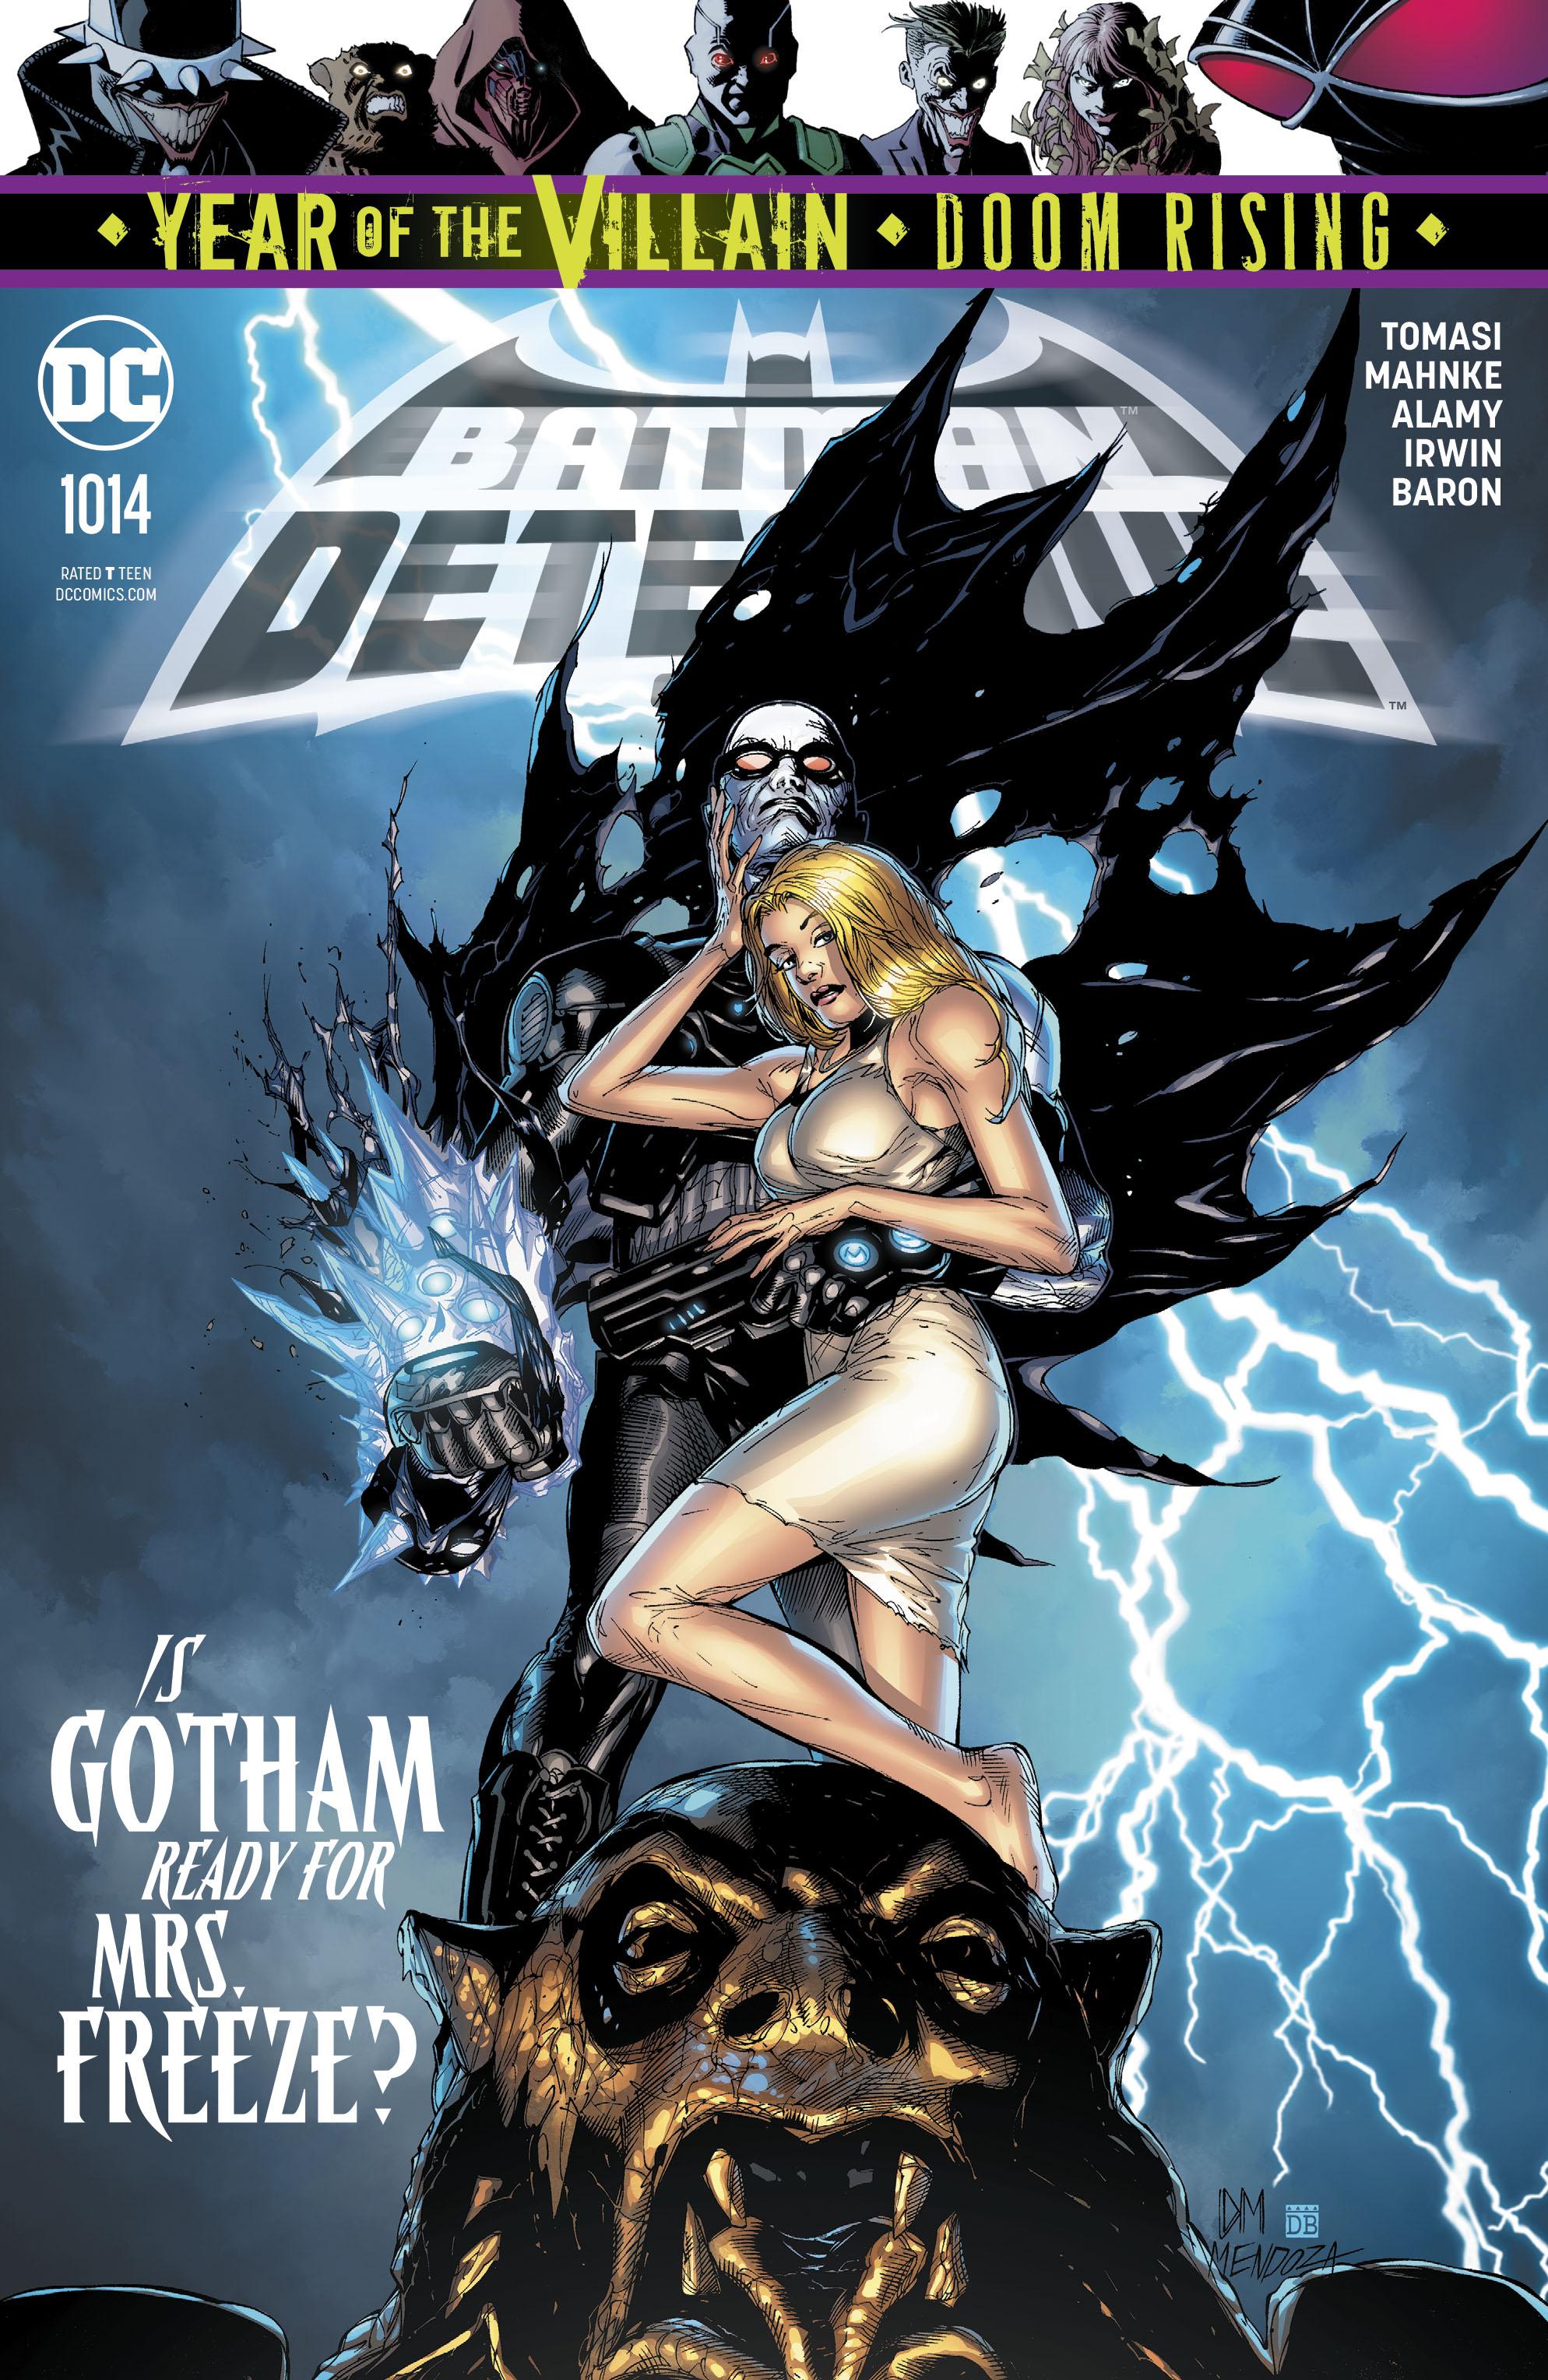 Detective Comics Vol. 1 #1014